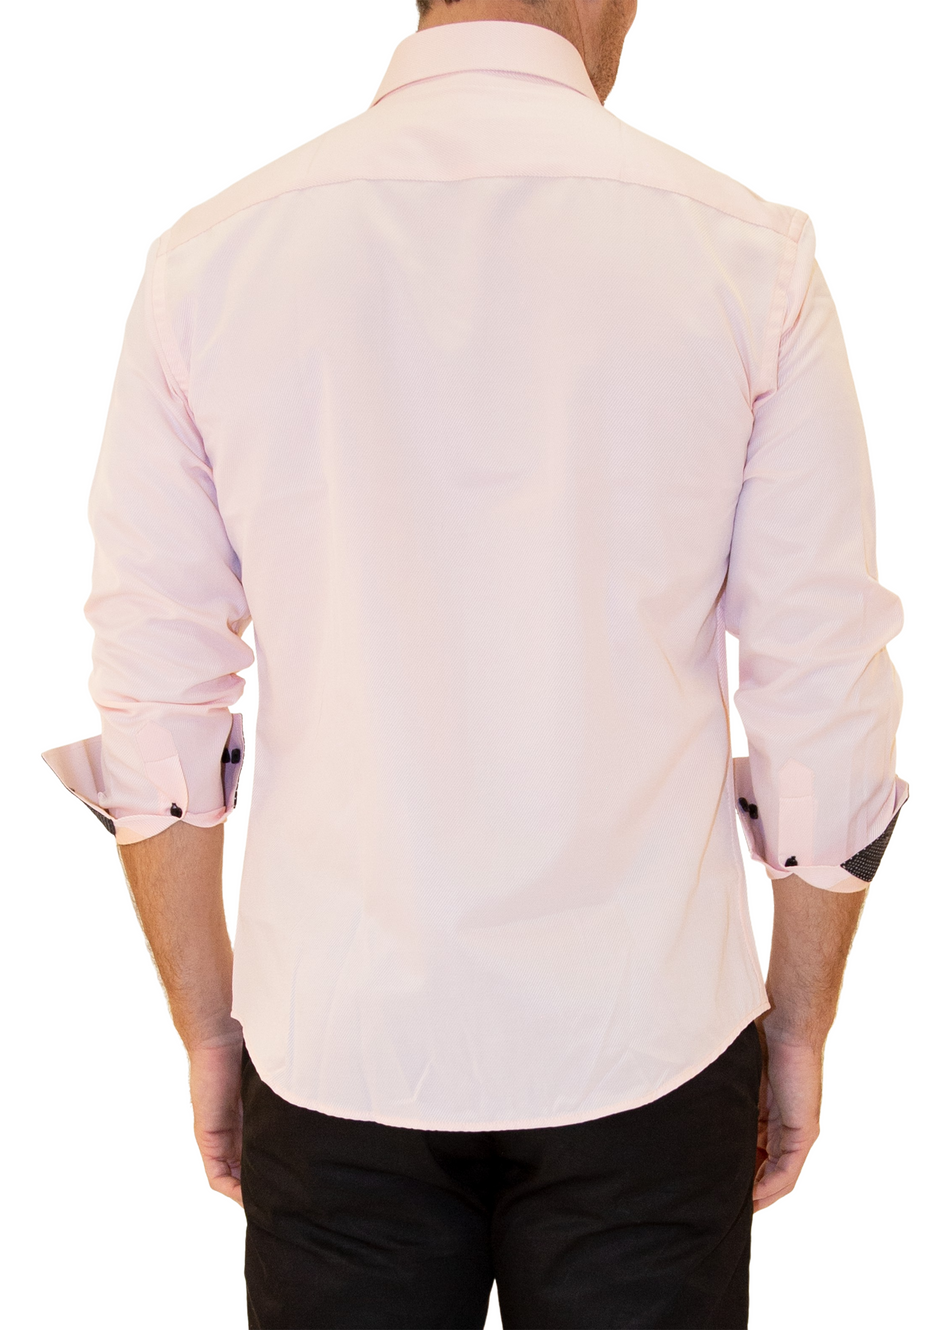 BESPOKE - Men's Peach Long Sleeve Dress Shirt - Modern Fit 